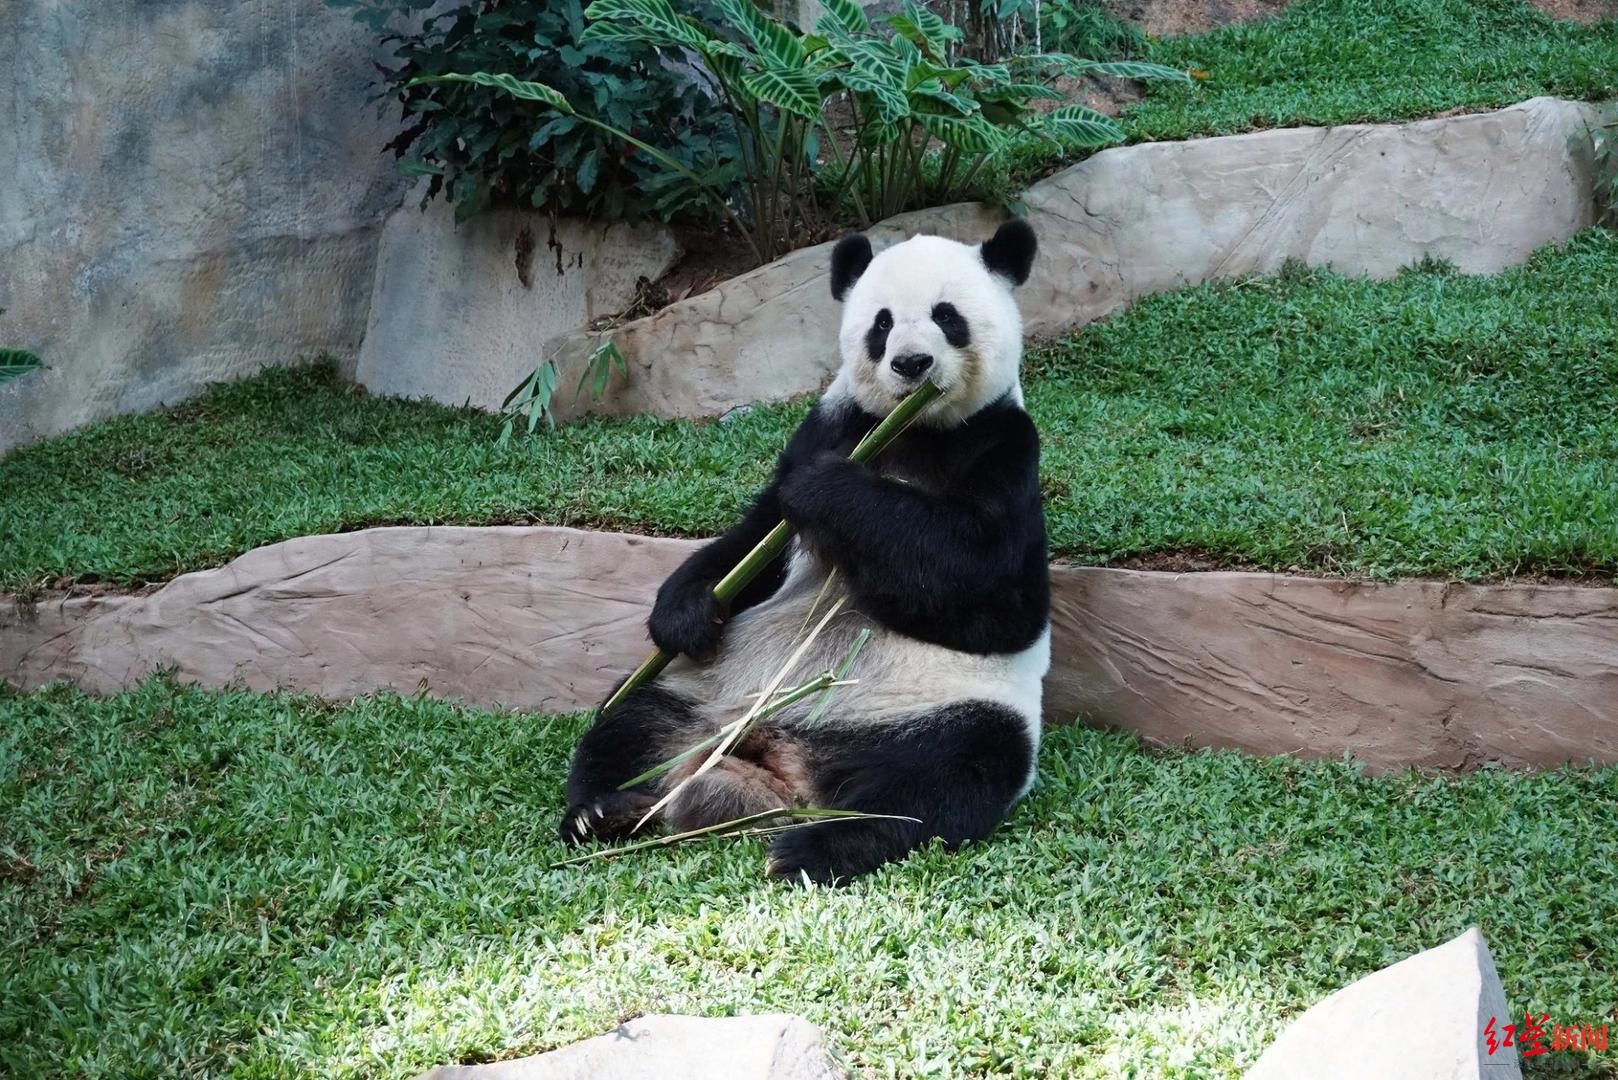 21岁旅泰大熊猫林惠今晨不幸去世,曾被发现鼻部出血,动物园今日召开发布会